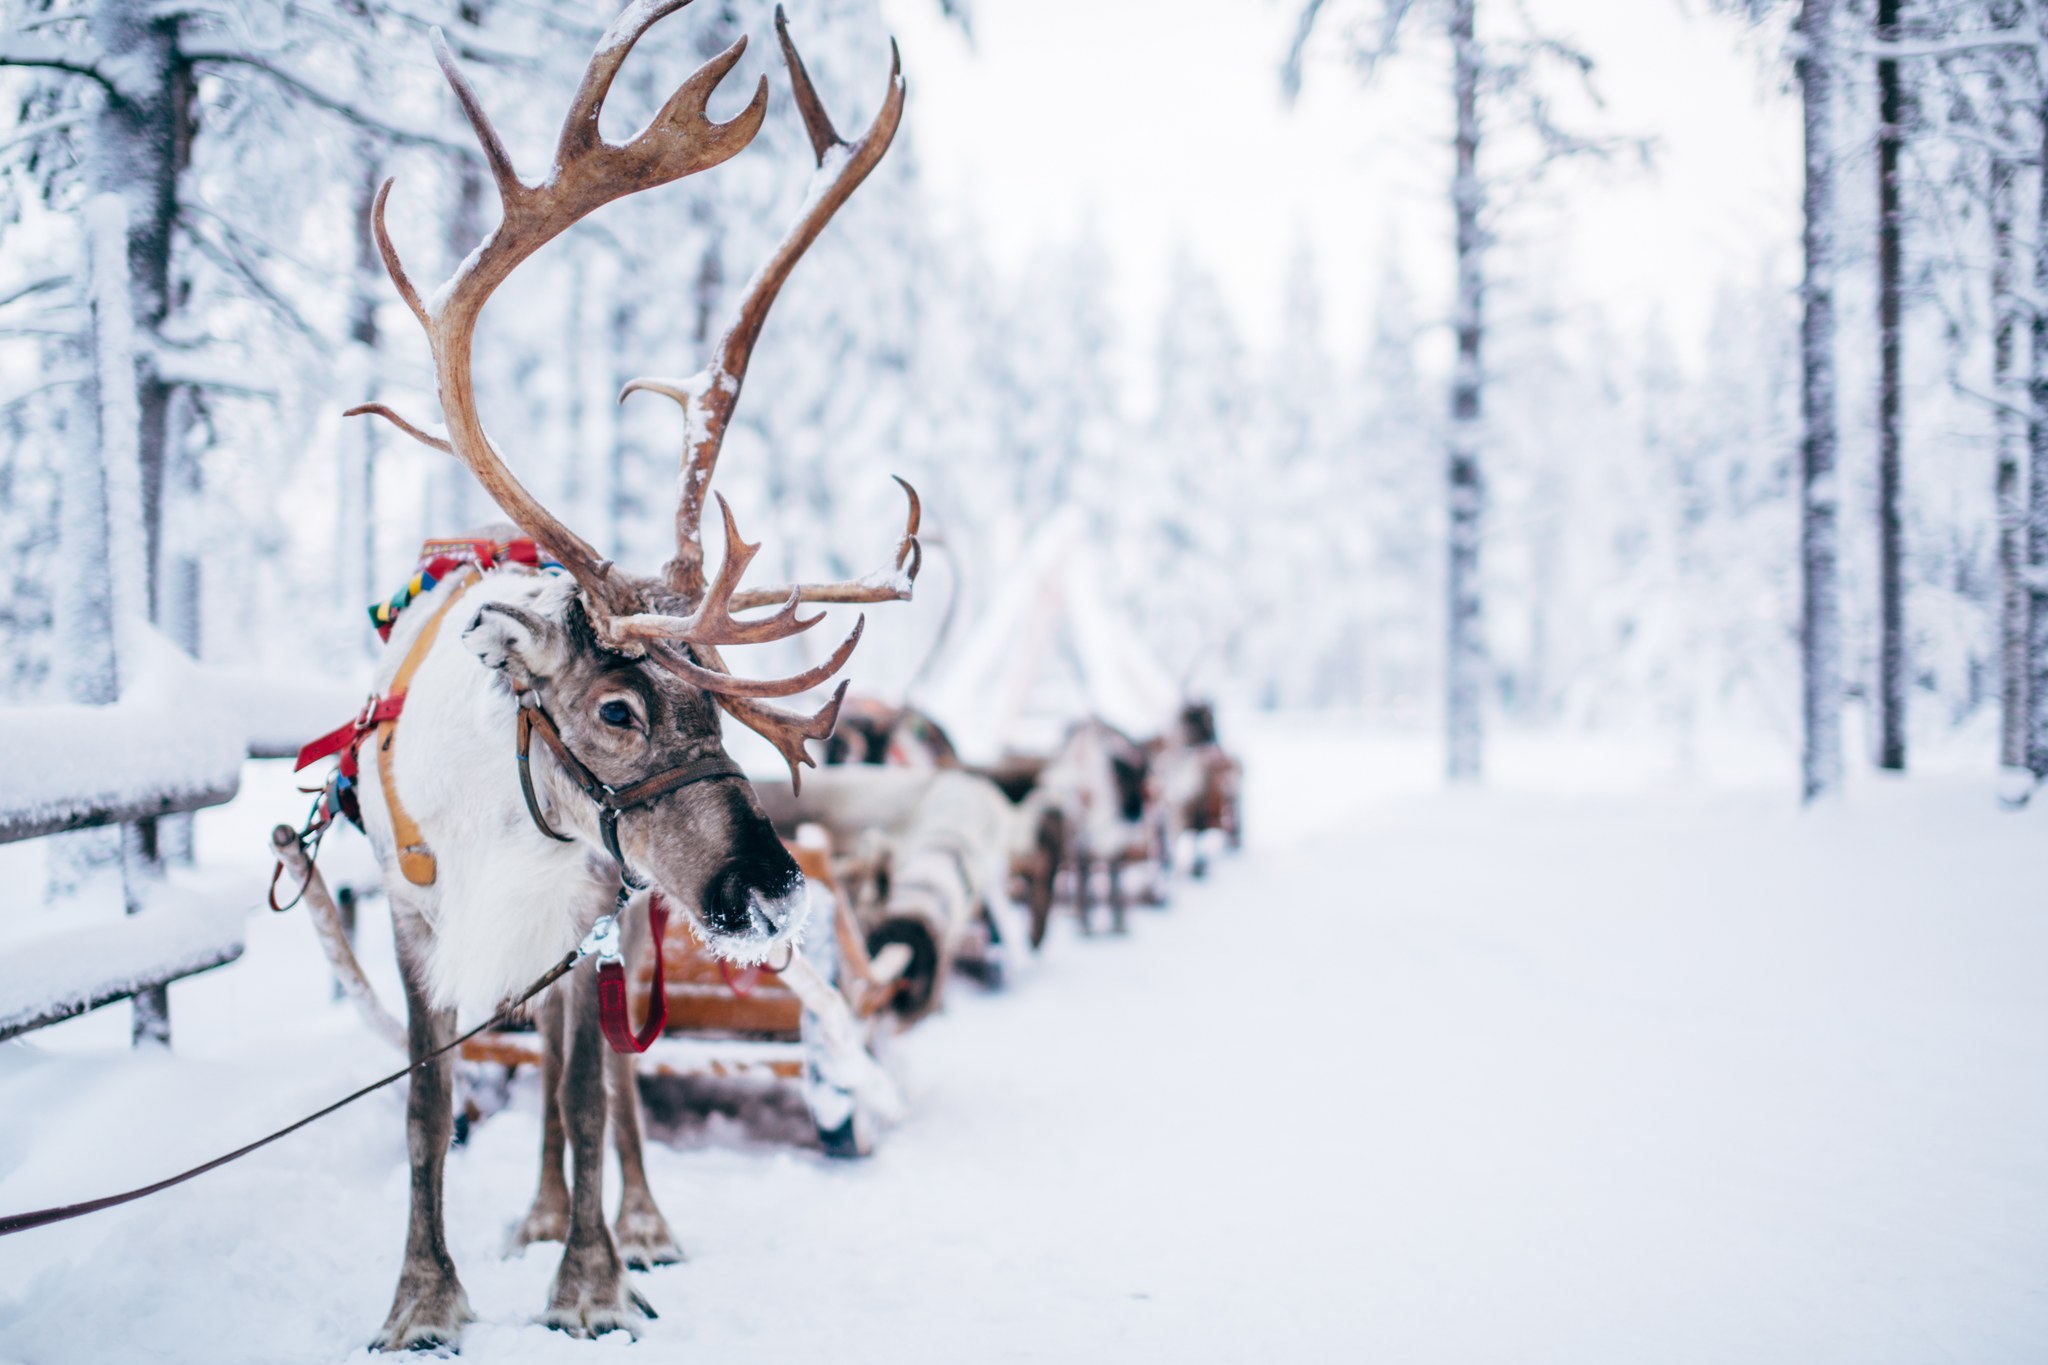 Reindeer sleigh ride at Santa Claus Reindeer in Rovaniemi Lapland Finland